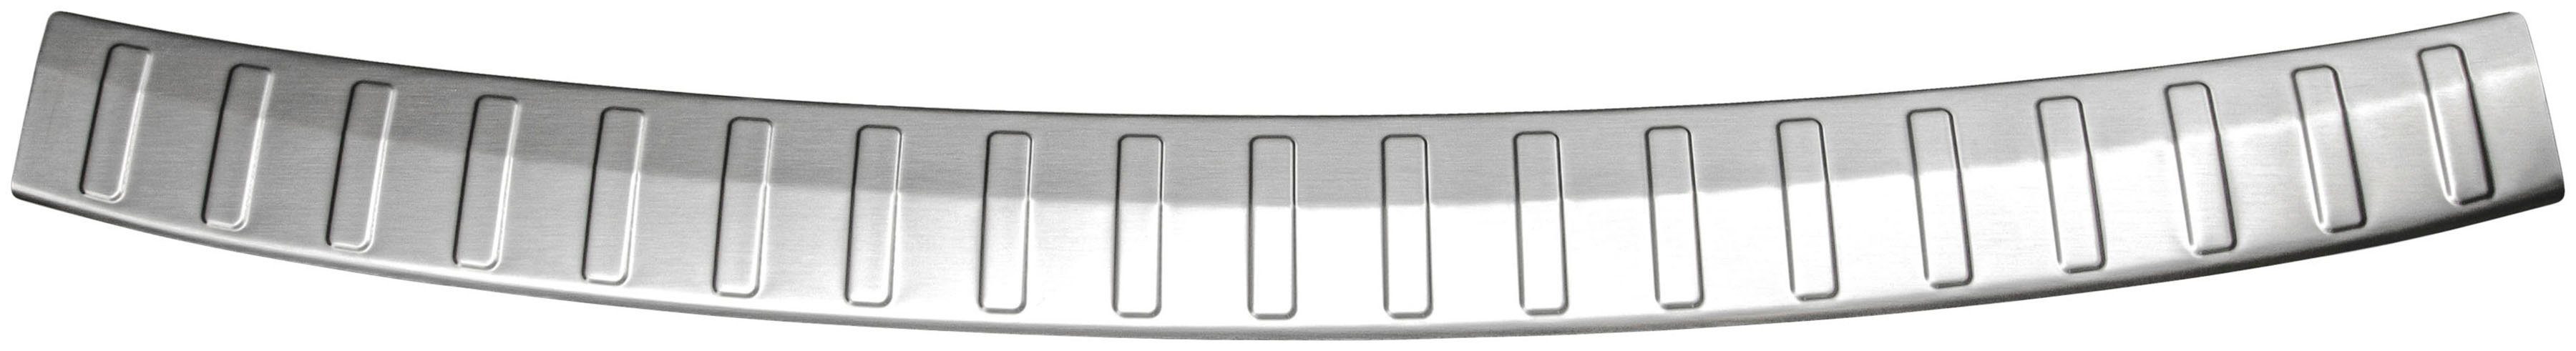 RECAMBO Ladekantenschutz, Zubehör Edelstahl X156, gebürstet Typ GLA, für MERCEDES ab 2013, matt